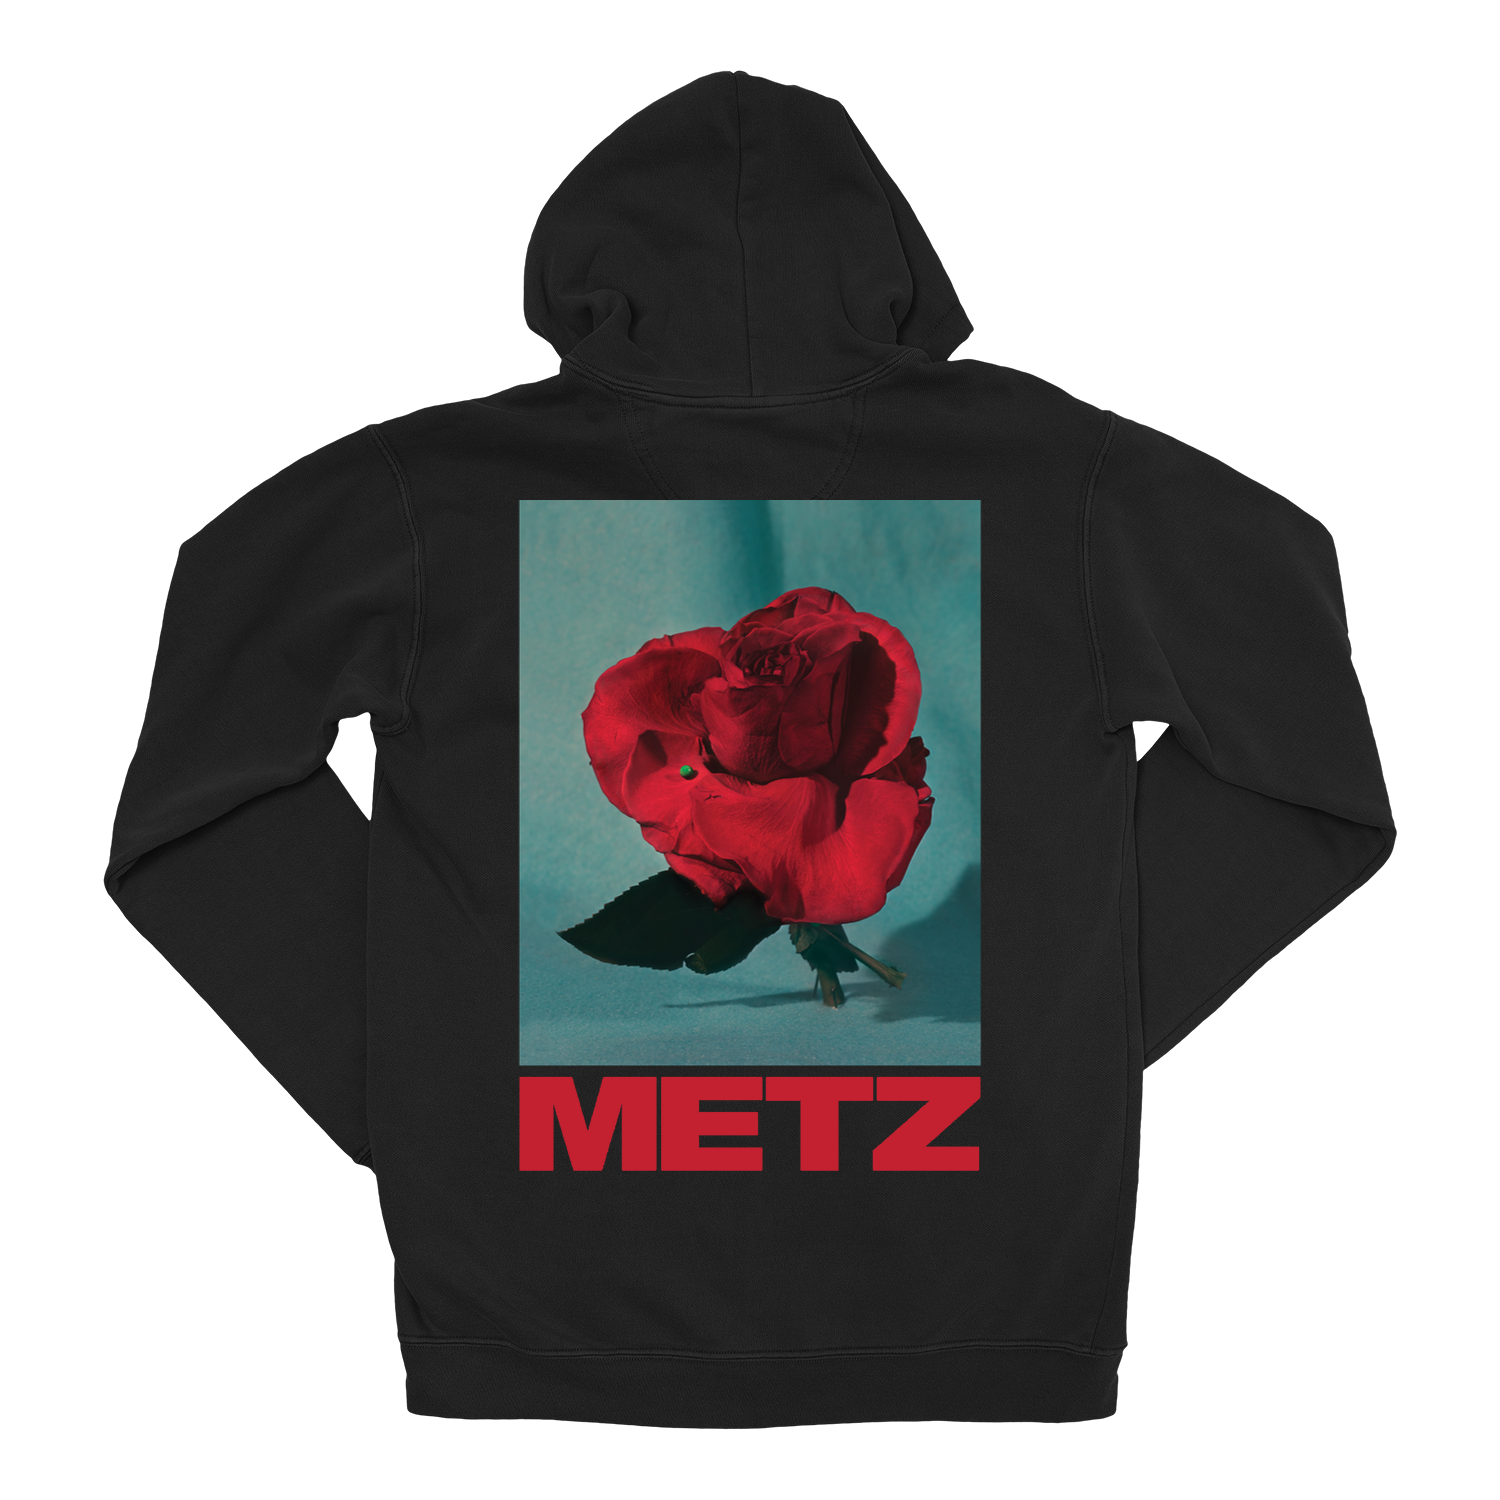 METZ "Rose" Black Zip-Up Hoodie